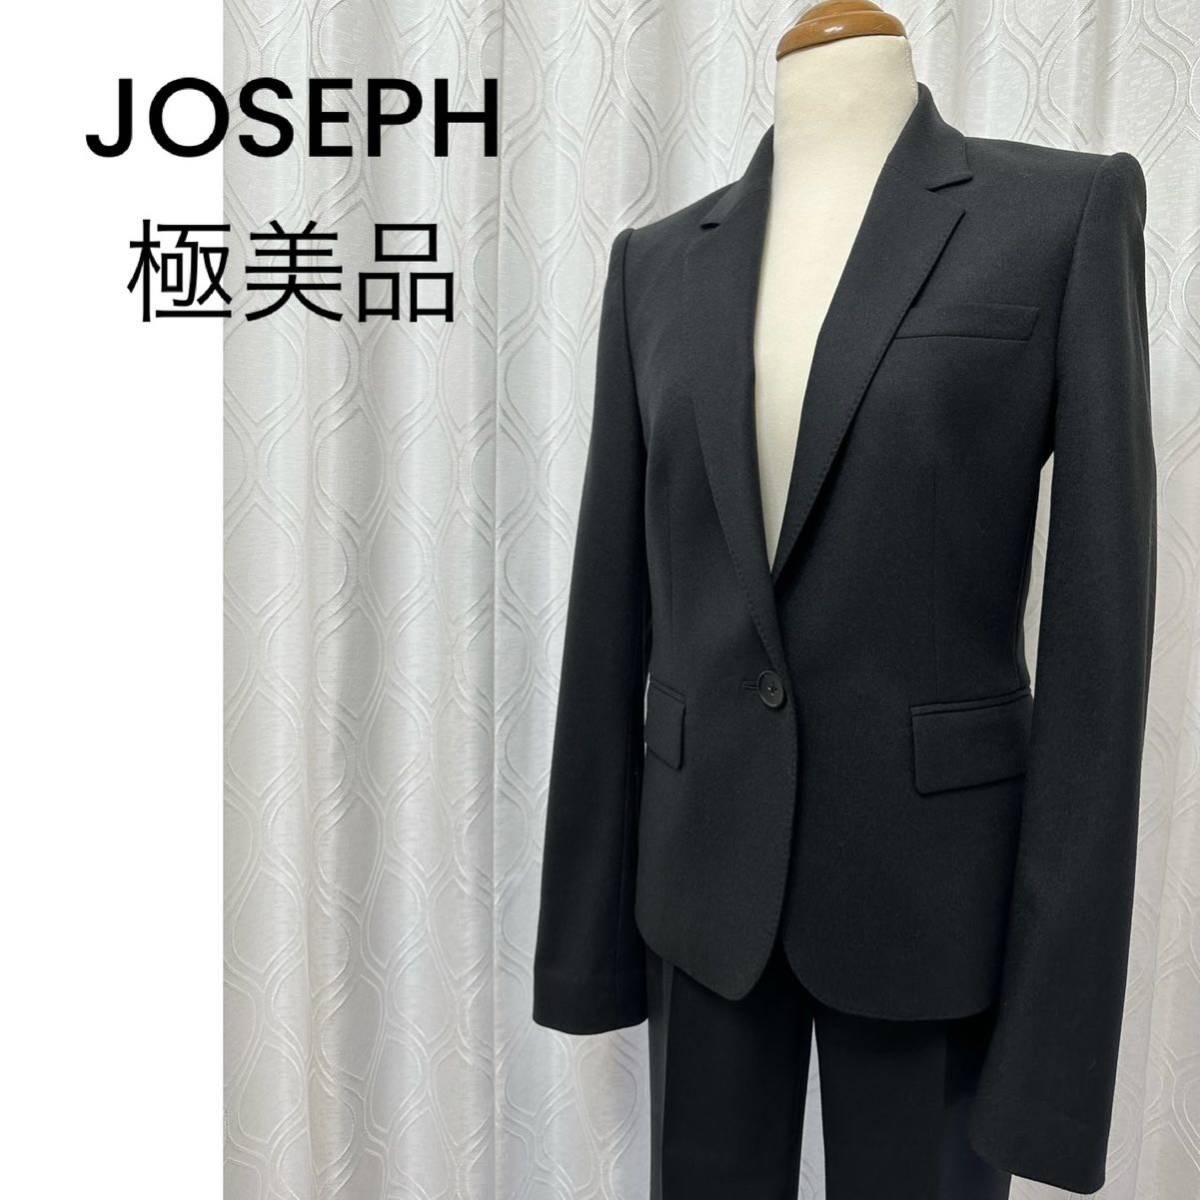 未使用に近い 極美品 JOSEPH ジョゼフ ウール パンツスーツ セットアップ ブラック 黒 36/34